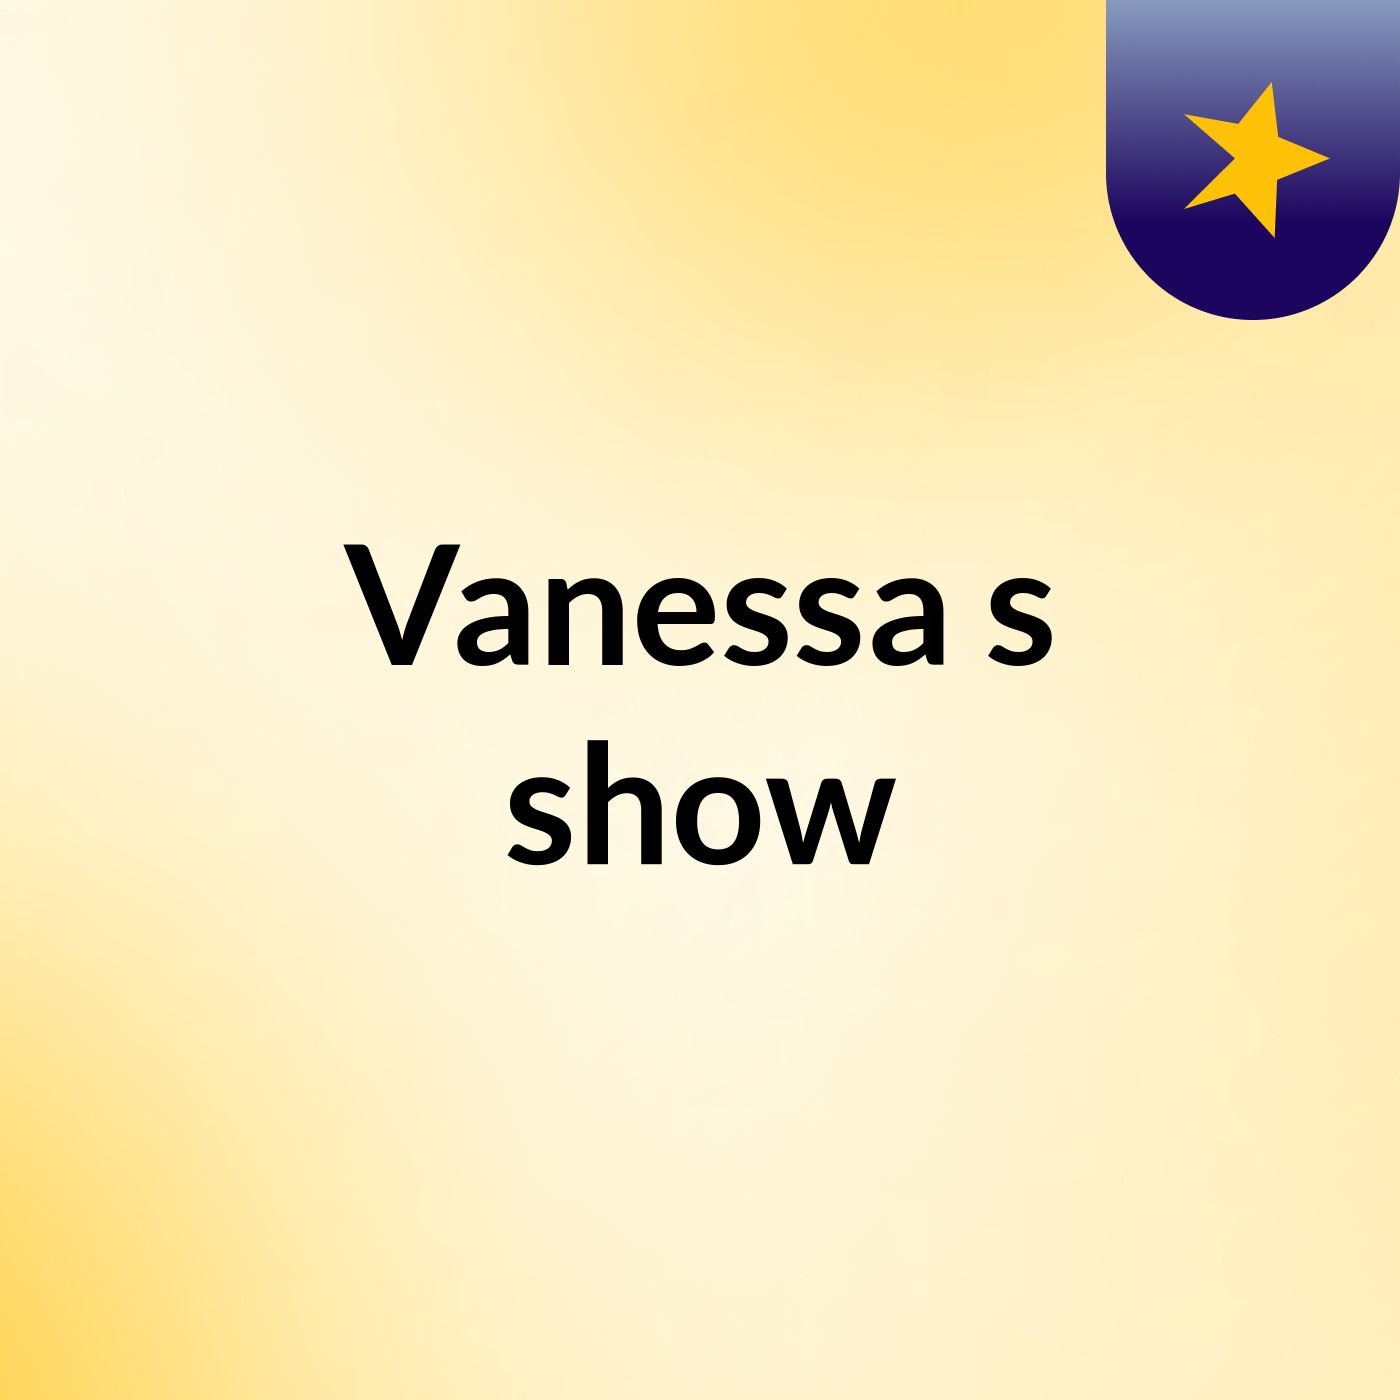 Vanessa's show